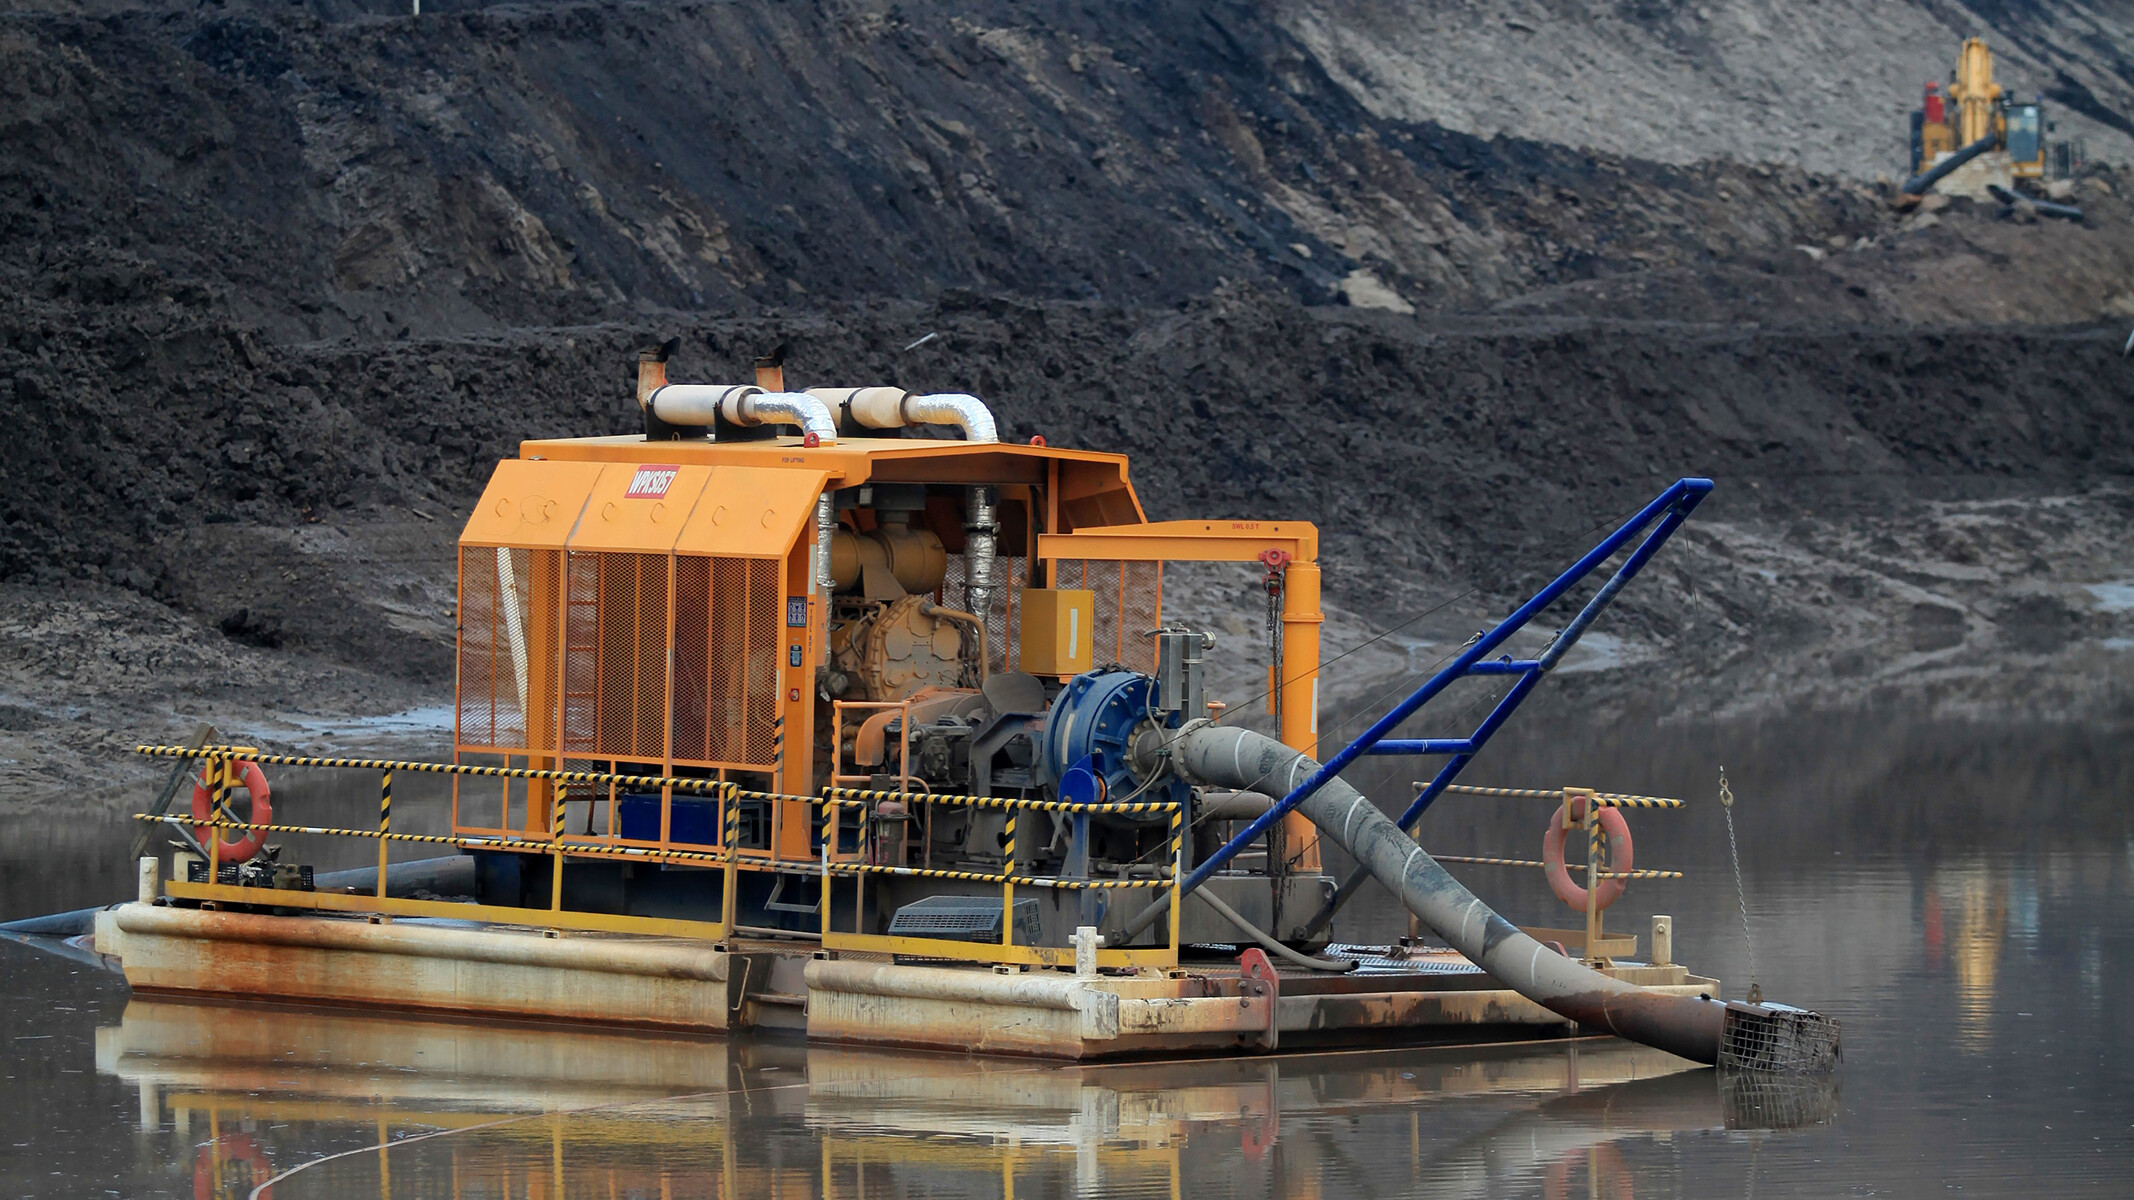 Máy bơm thoát nước và bơm nước trong quy trìnhmang lại hiệu quả tối đa trong khai thác mỏ.